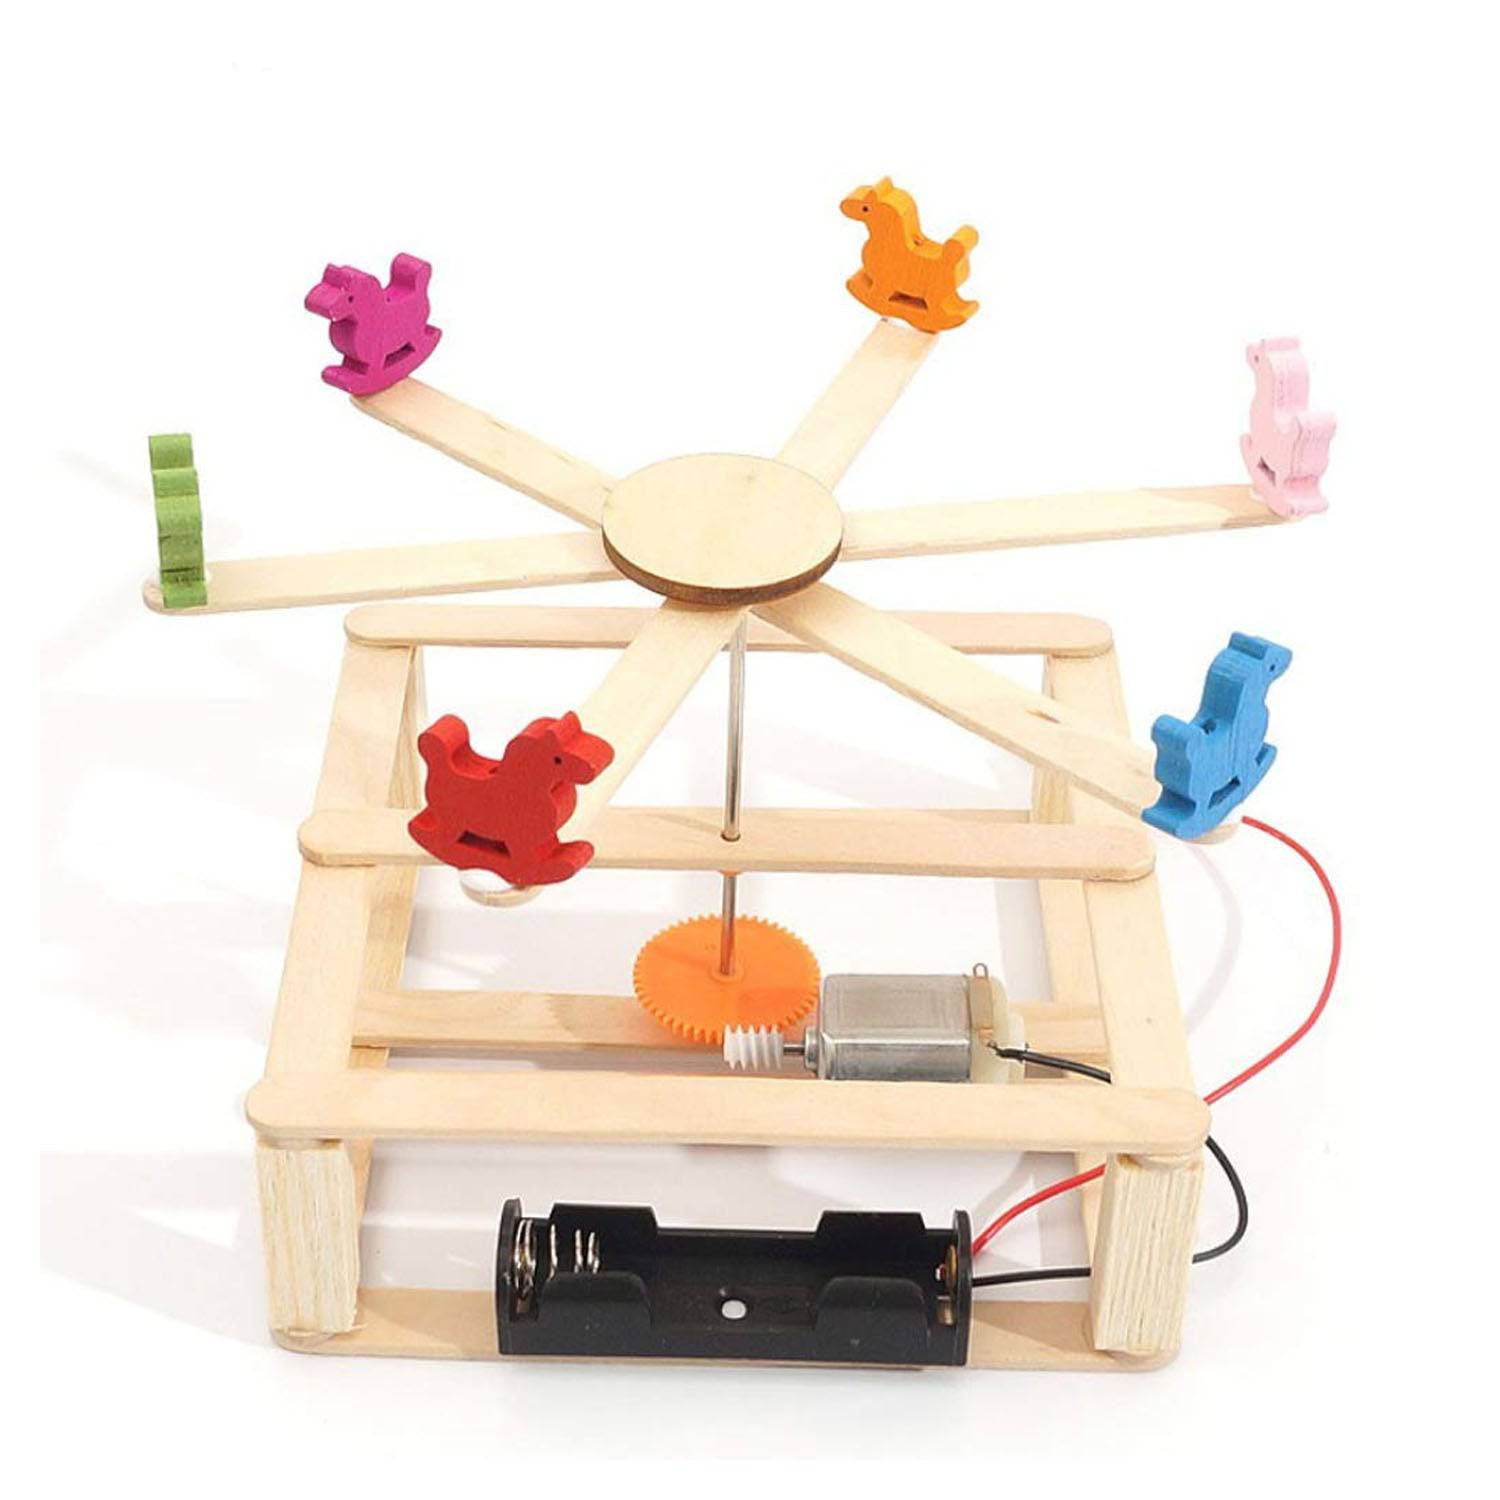 DIY Whirligig Carousel STEM Kit Wooden Merry-Go-Round